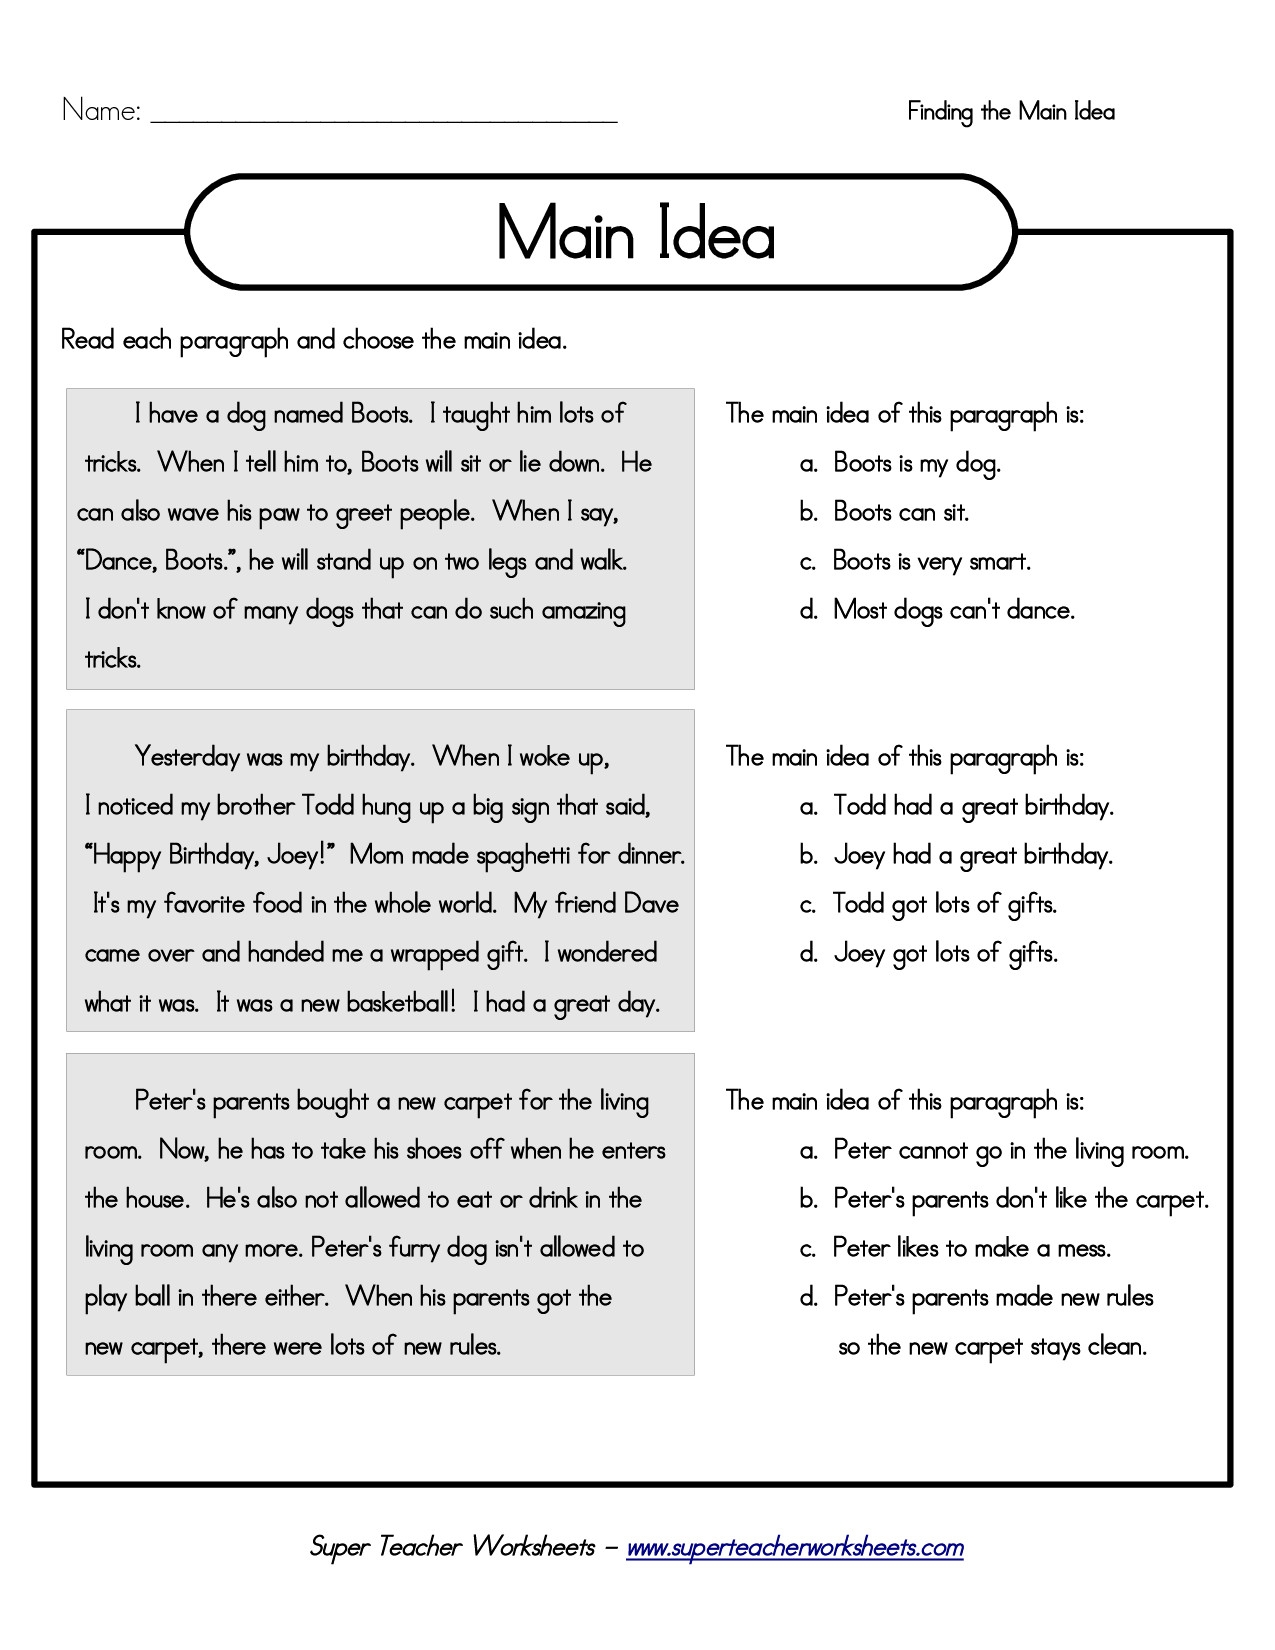 10 Unique Third Grade Main Idea Worksheets beautiful comprehension worksheets main idea thejquery 2023